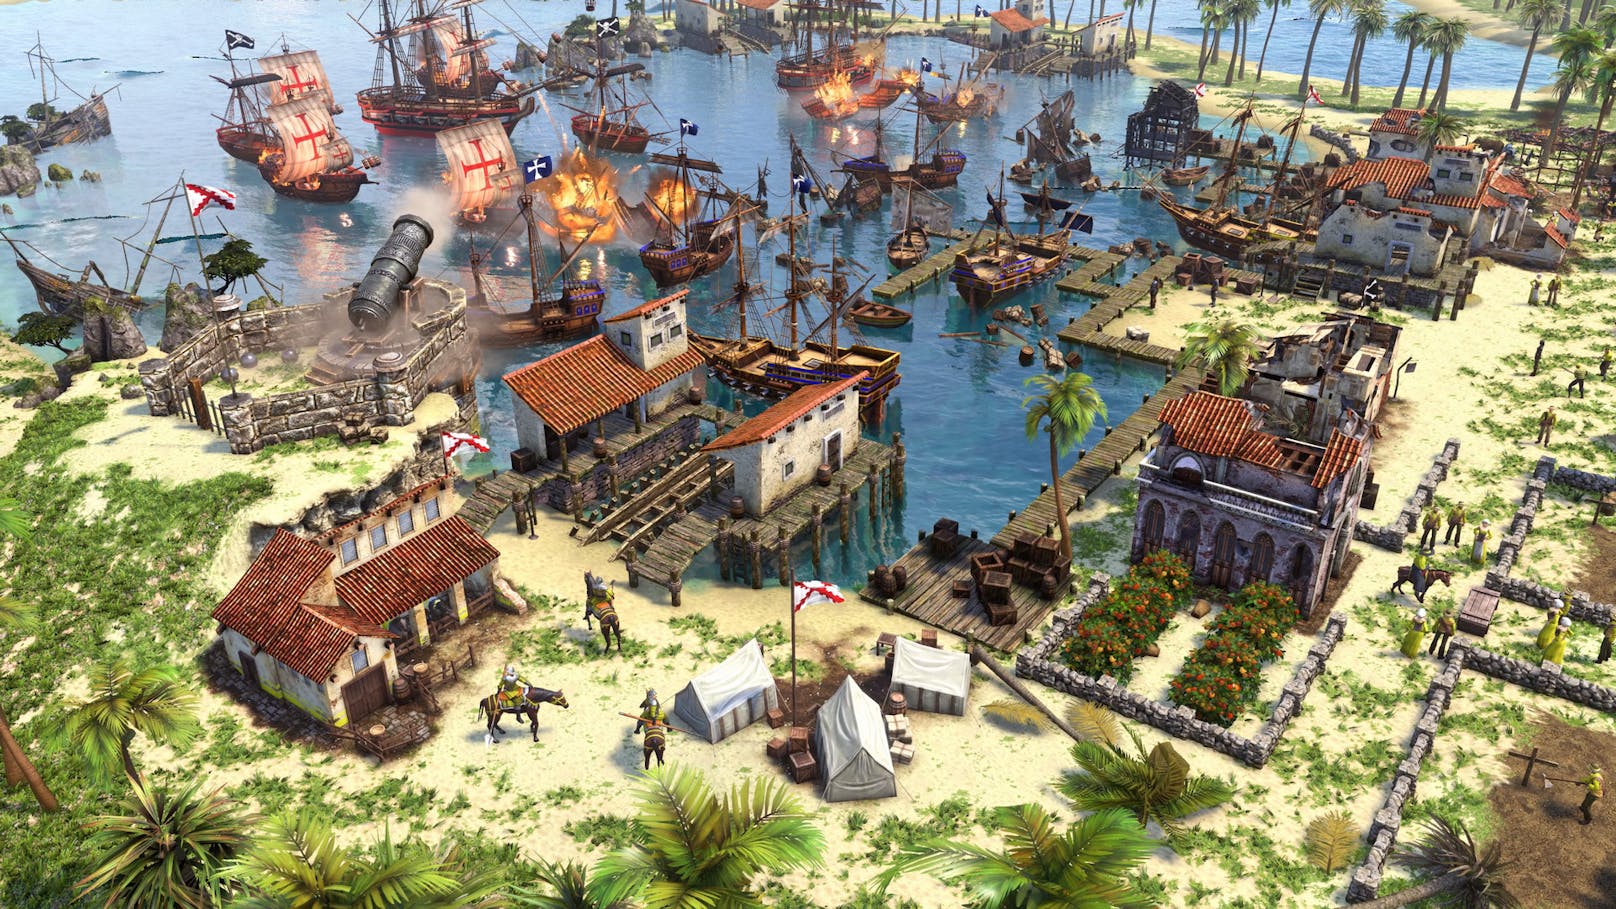 Zusätzlich zum Komplettpaket aller bisher für das Game veröffentlichten Inhalte enthält die "Definitive Edition" zwei frische Spielmodi sowie zwei neue Zivilisationen: die Inkas und die Schweden.